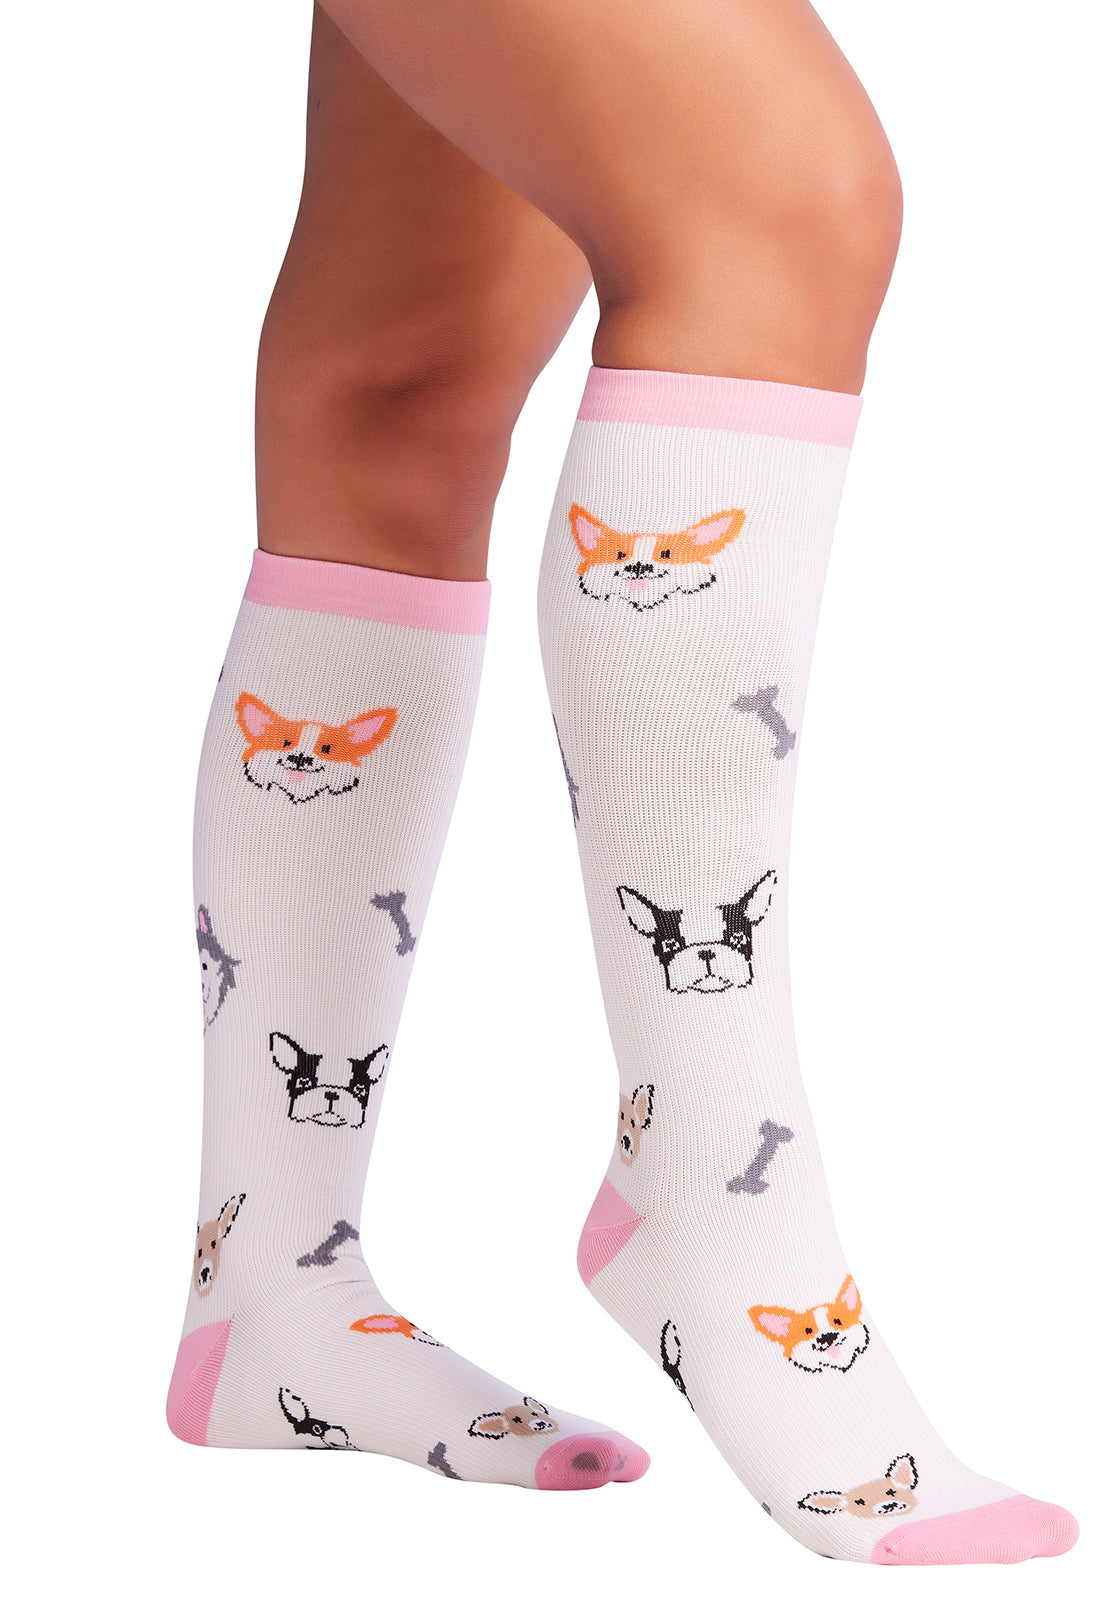 Regular Fit - Compression Socks 10-15mmHg Compression Socks Cherokee Legwear Dog Love  